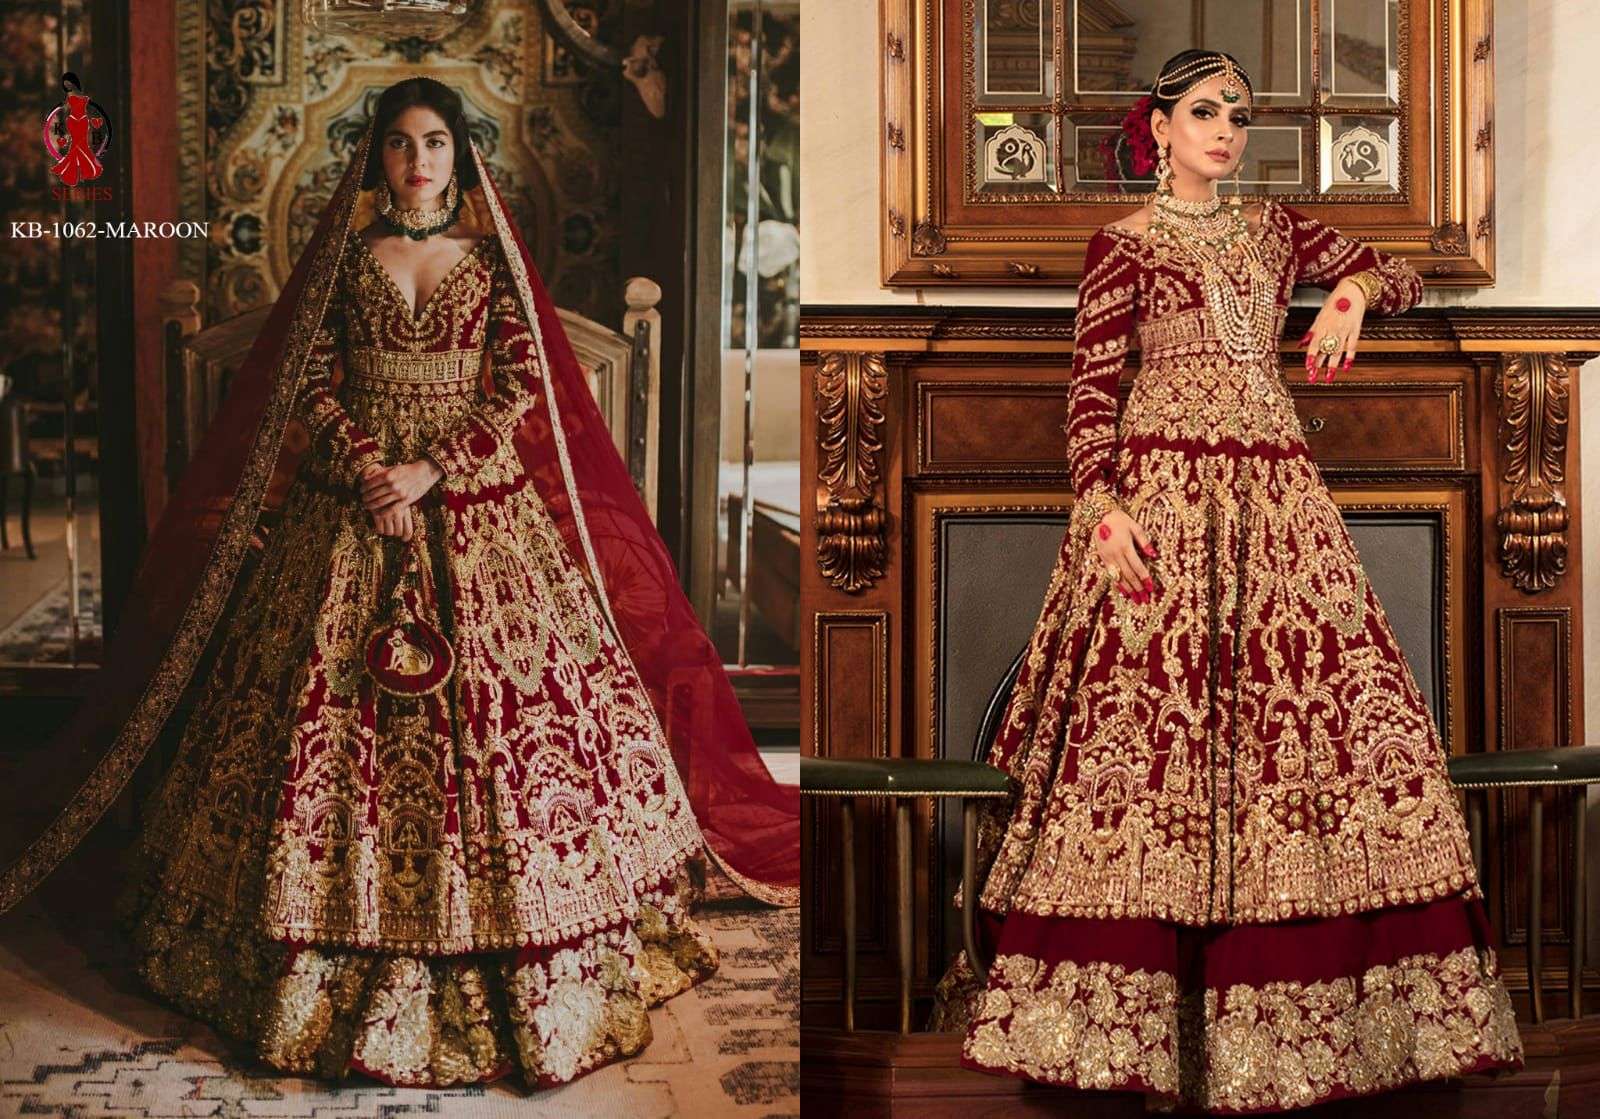 Bridal Traditional Lehenga Choli | Marriage Engagement Wedding Outfit